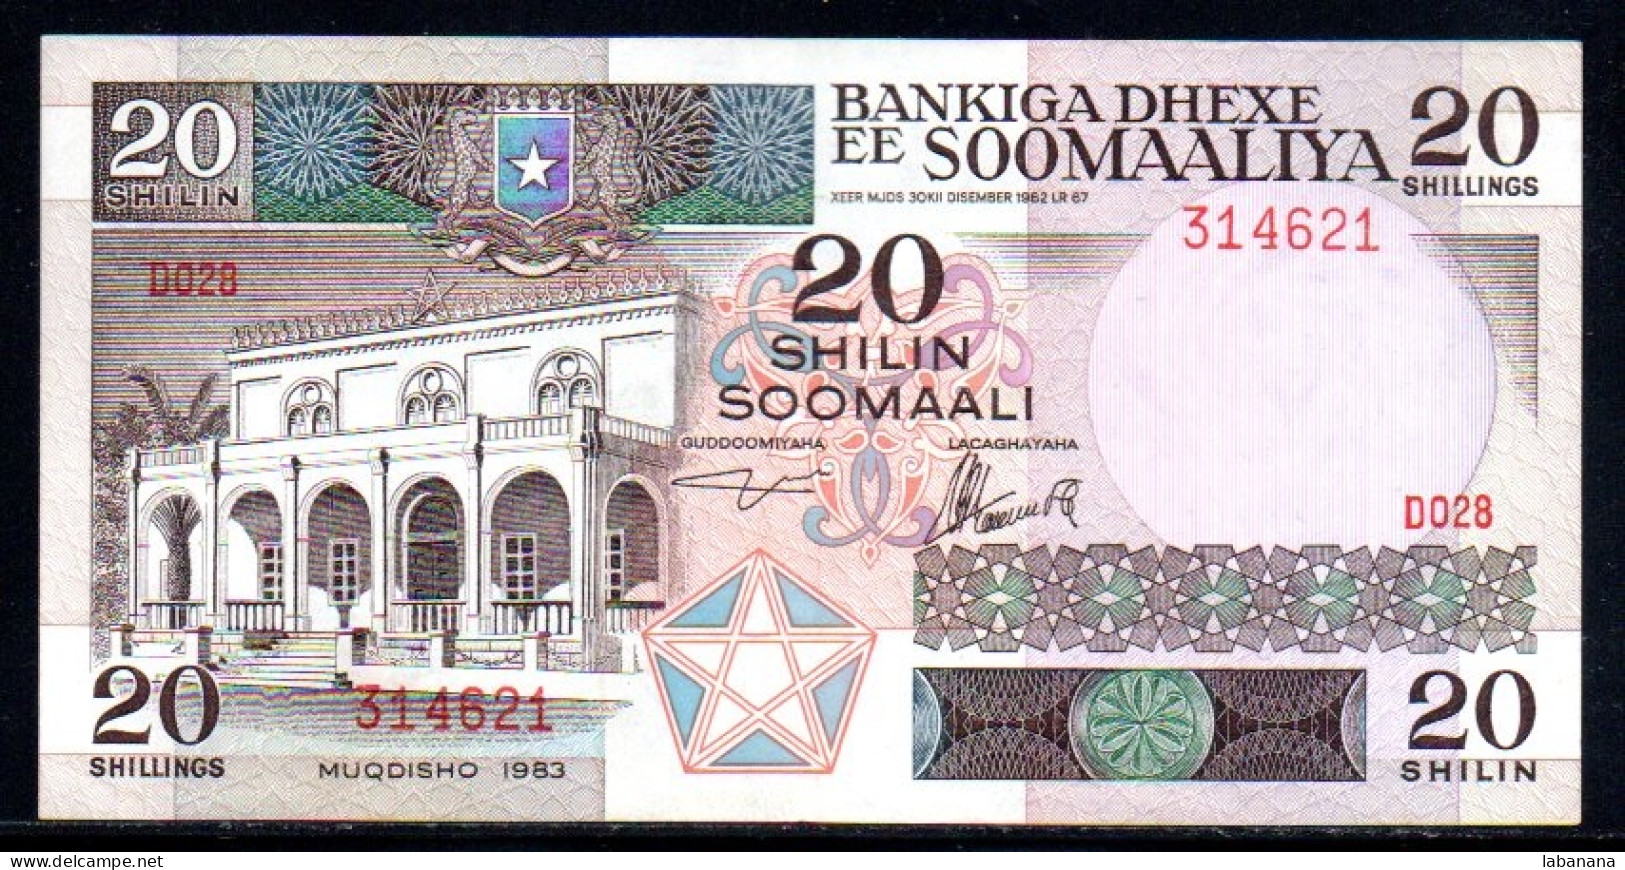 659-Somalie 20 Shilin 1983 D028 - Somalia